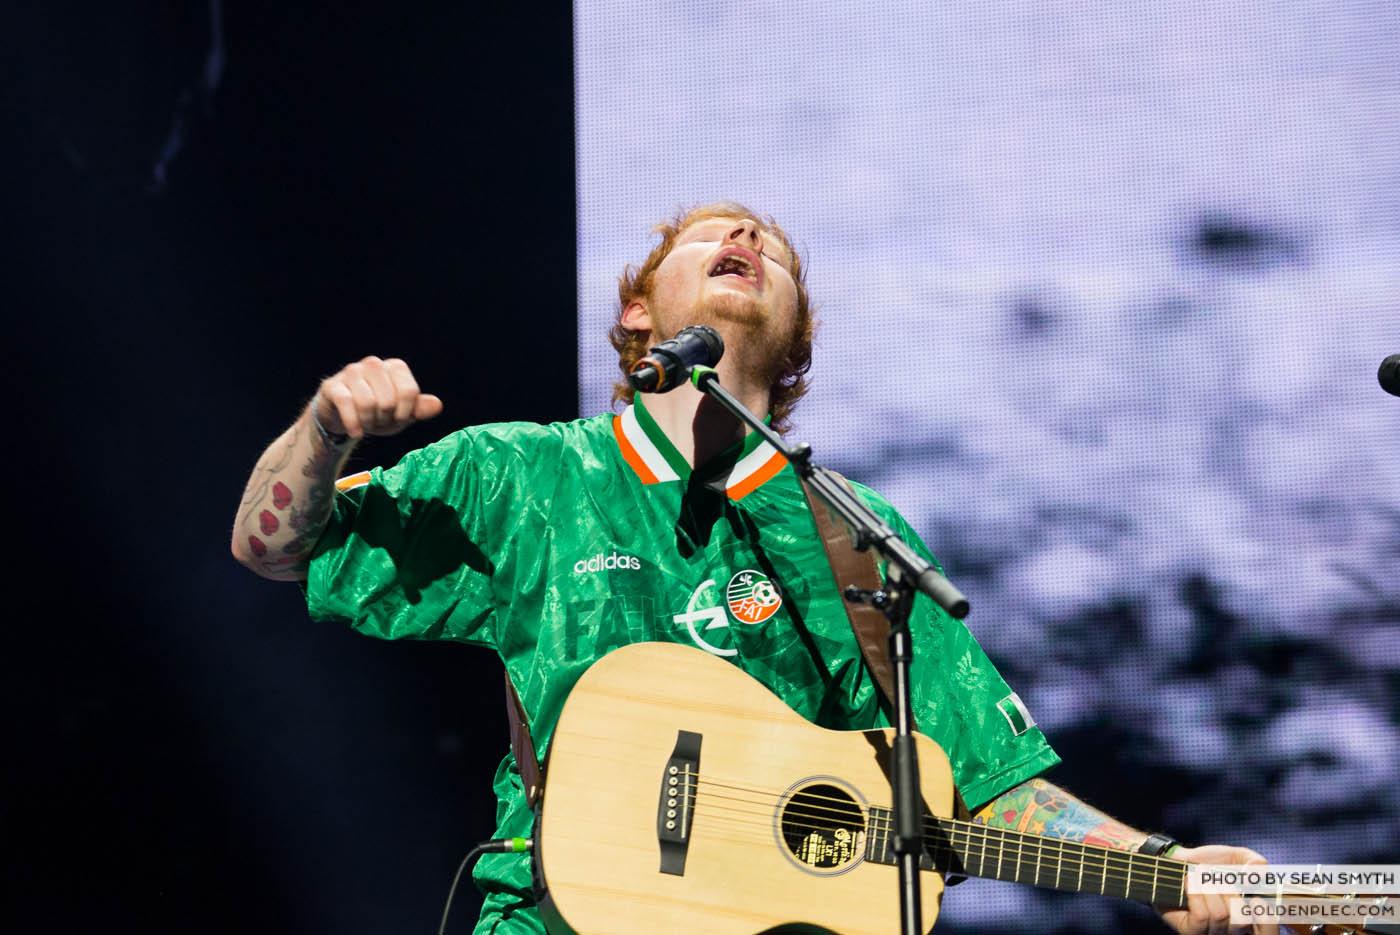 Ed Sheeran at 3arena, Dublin